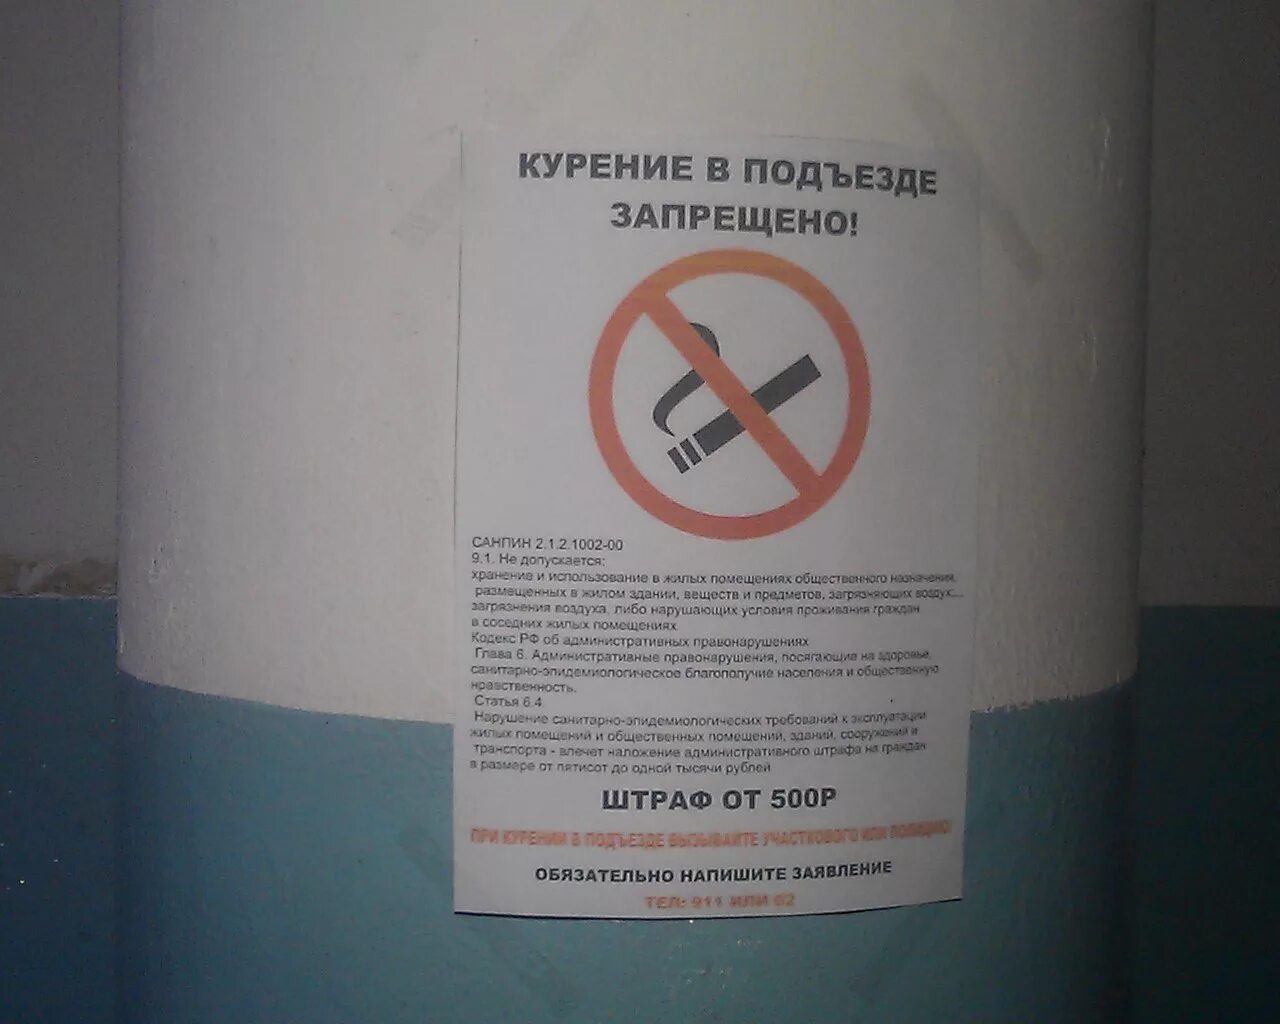 Запрещено курить в подъезде. Курение в подъезде запрещено. Запрет курить в подъезде. Объявление курение в подъезде запрещено. Объявление о курении в подъезде.